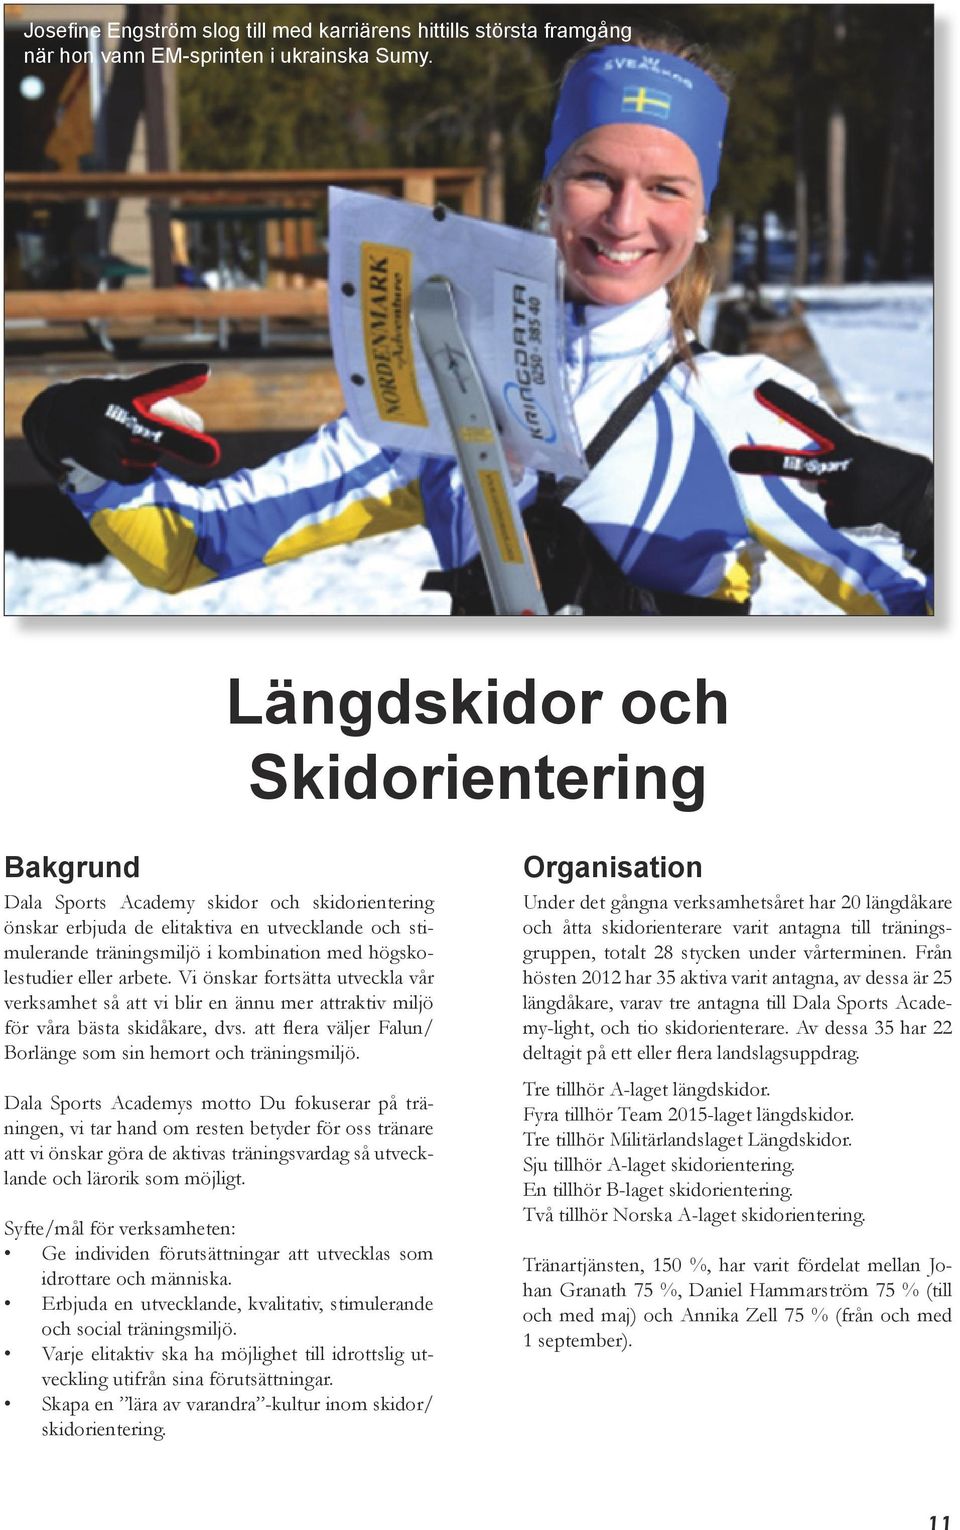 eller arbete. Vi önskar fortsätta utveckla vår verksamhet så att vi blir en ännu mer attraktiv miljö för våra bästa skidåkare, dvs. att flera väljer Falun/ Borlänge som sin hemort och träningsmiljö.